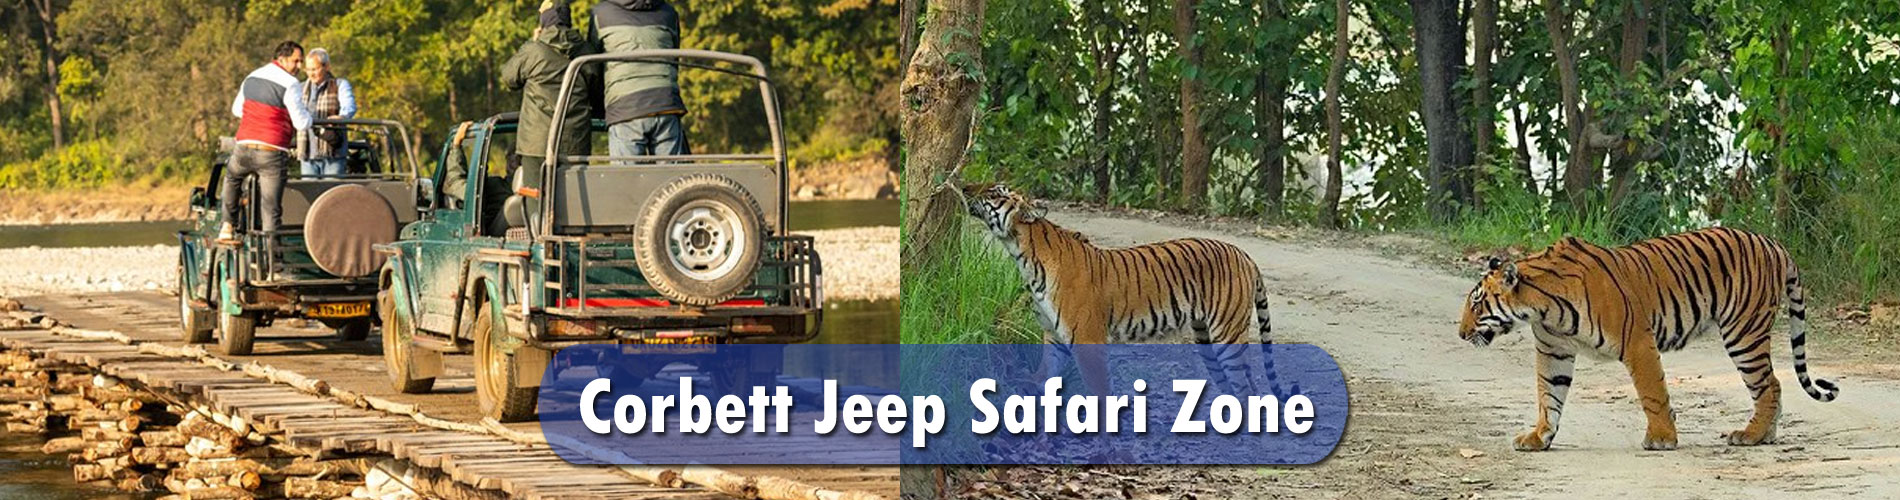 Corbett Jeep Safari Zone